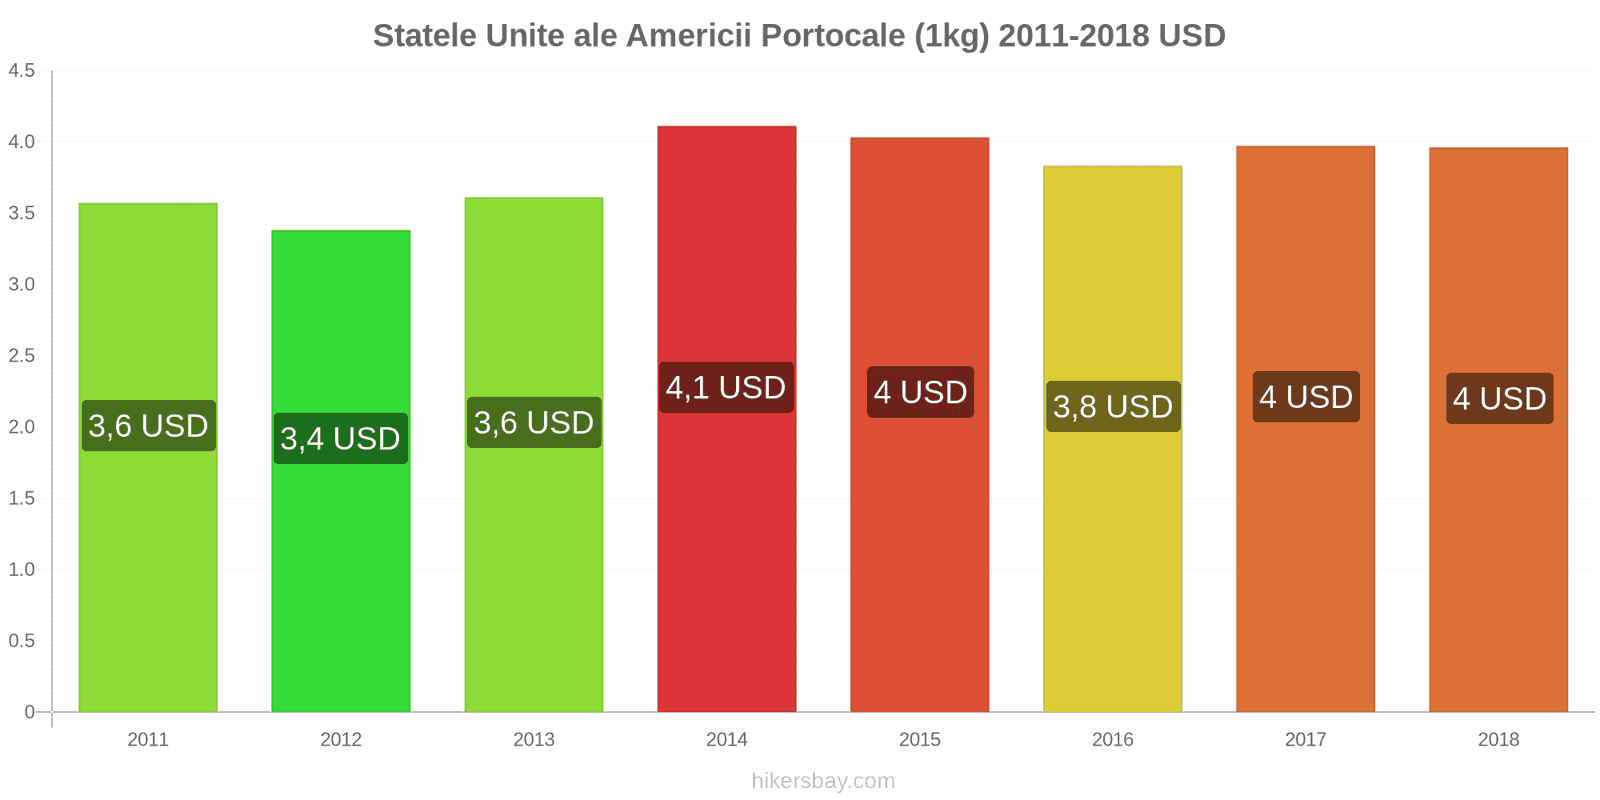 Statele Unite ale Americii schimbări de prețuri Portocale (1kg) hikersbay.com